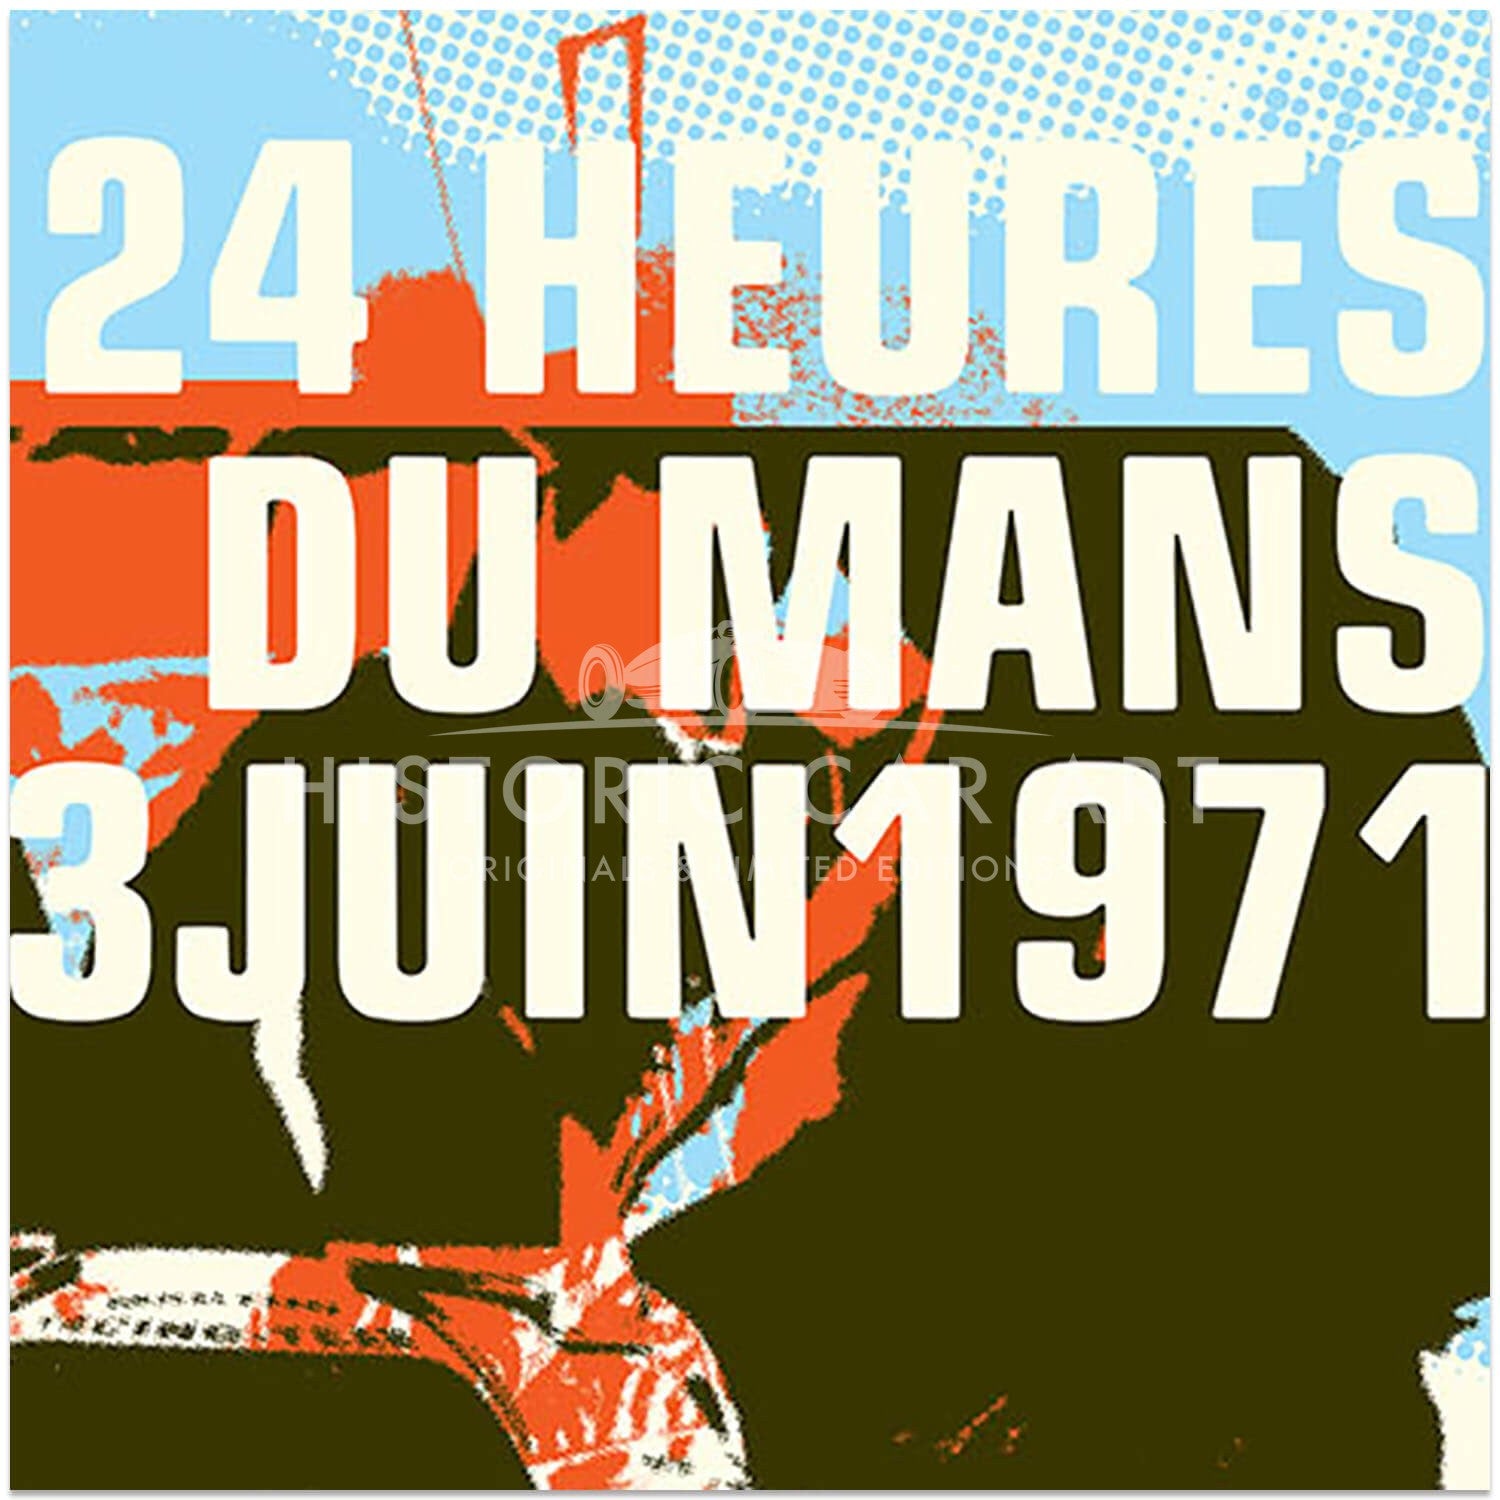 Porsche 917 | 1971 Le Mans 24 Hours Celebration | Art Print | Poster #1